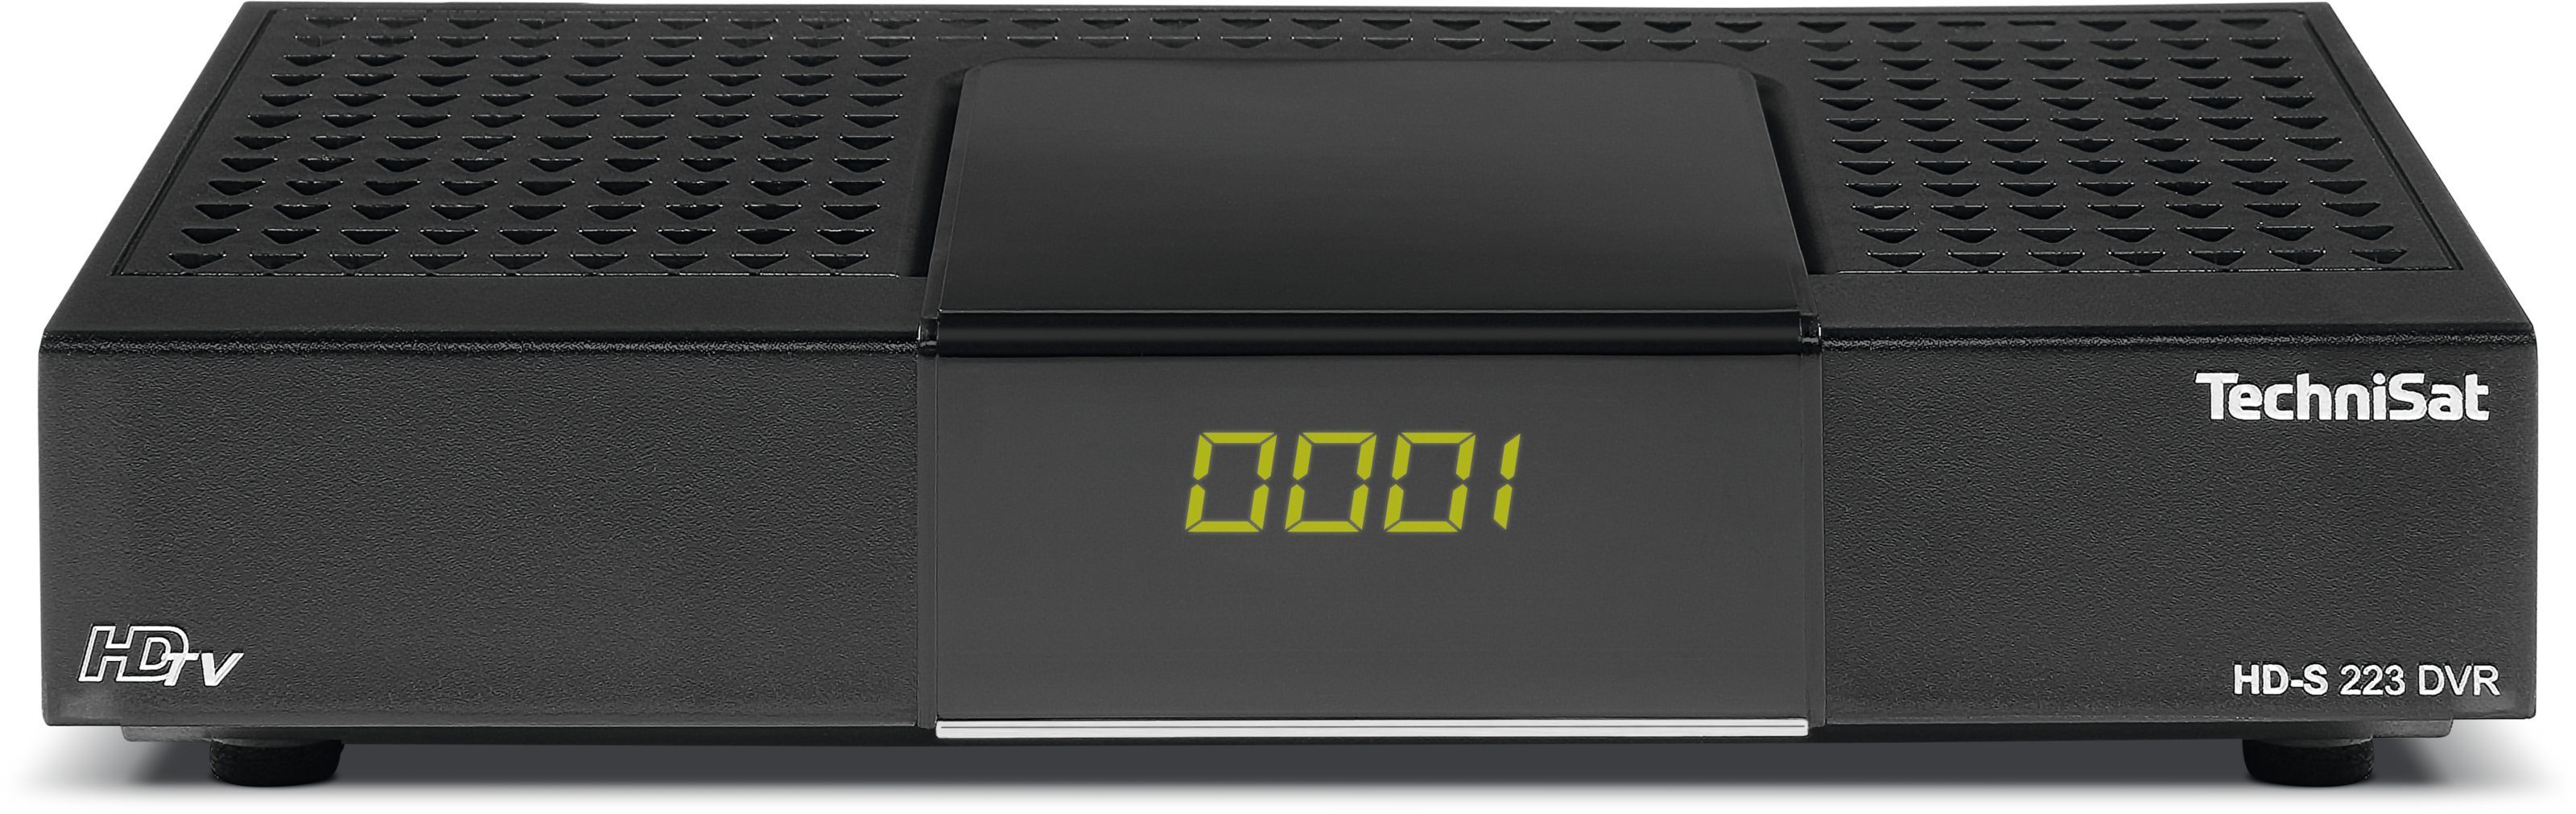 TechniSat »HD-S 223 DVR« SAT-Receiver (Kompaktes, kleines Gehäuse,  USB-Mediaplayer für Video, Musik und Bilder, Unterstützt Audio Codierformat  AAC, Digitaler Videorekorder auf USB-Datenträger) online kaufen | OTTO